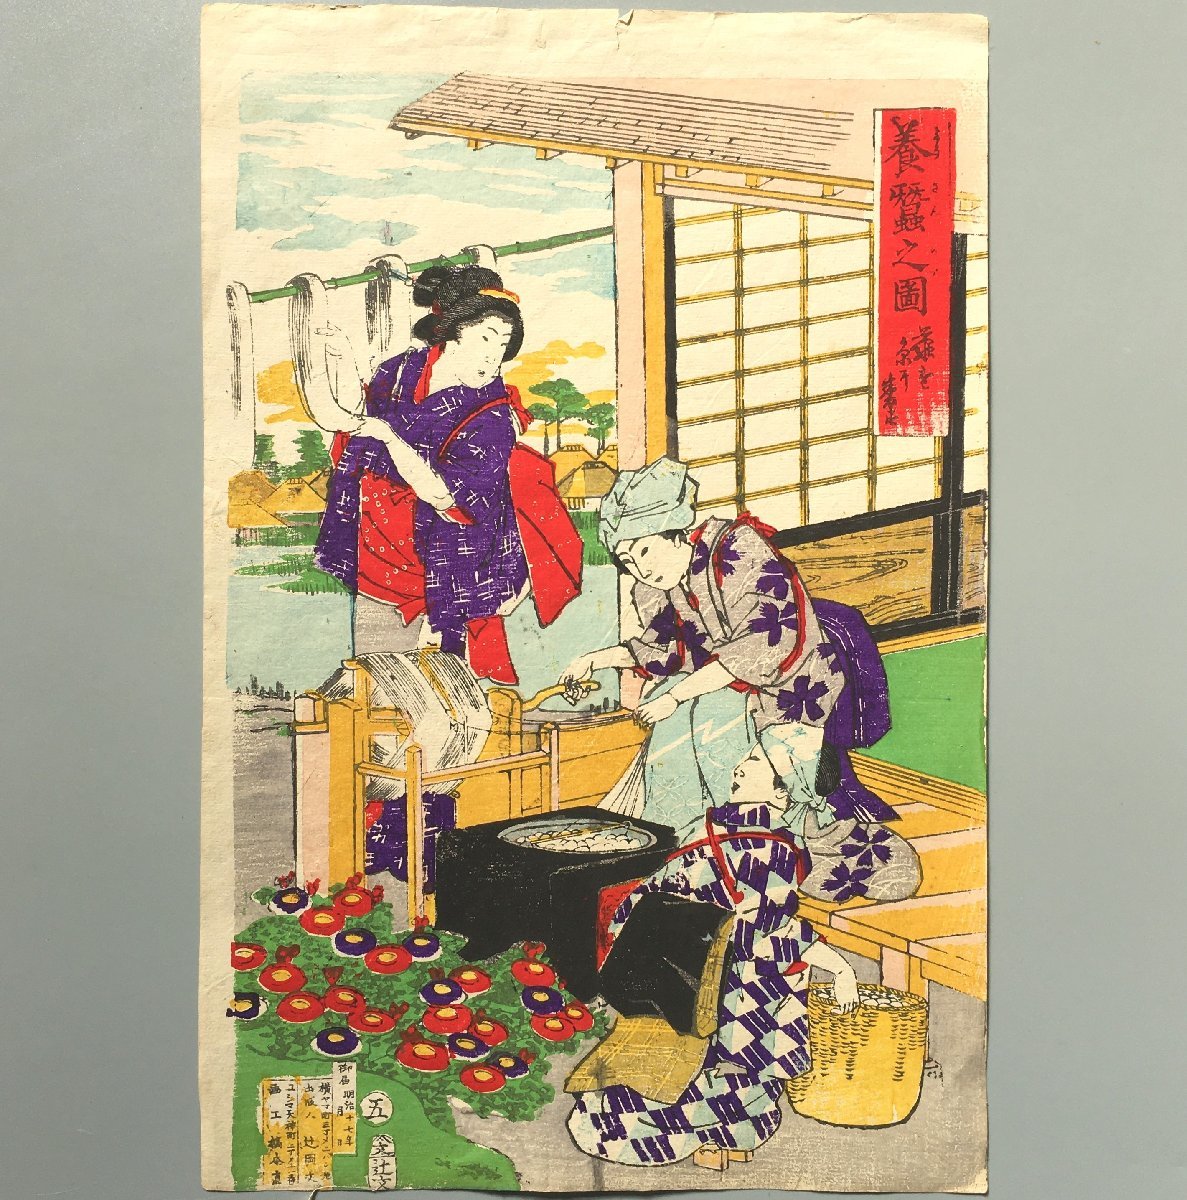 नाओयोशी हाशिमोटो, रेशम उत्पादन का चित्रण 5: कोकून से धागा निकालना, 1884, प्रामाणिक, रेशम के कीड़ों का पालन, रेशम बुनाई, वुडब्लॉक प्रिंट, Ukiyo ए, चित्रकारी, Ukiyo ए, प्रिंटों, अन्य